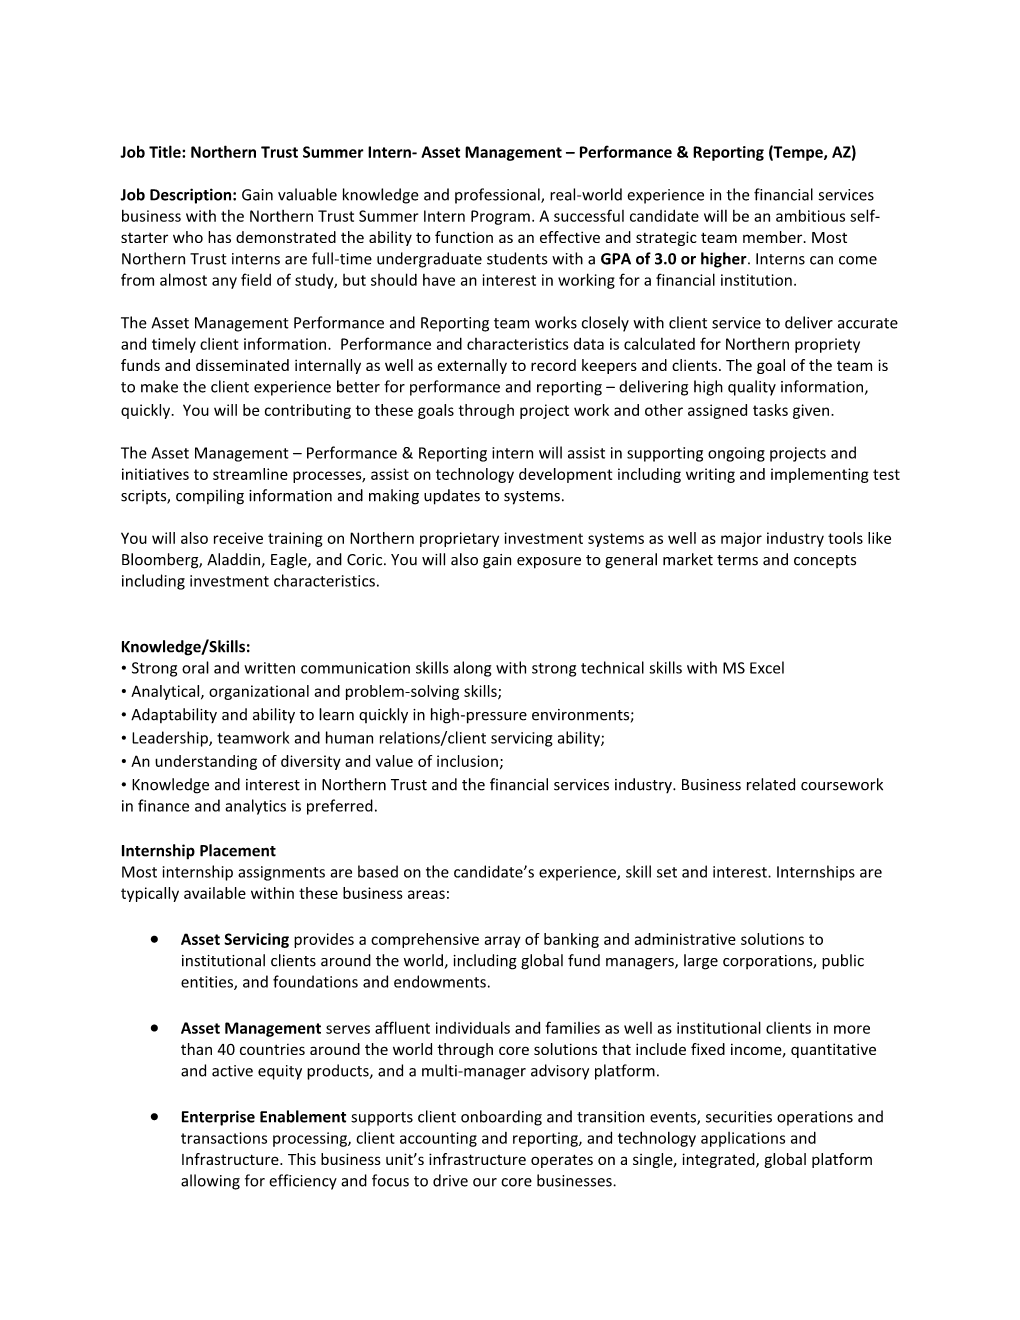 Job Title: Northern Trust Summer Intern- Asset Management Performance & Reporting (Tempe, AZ)